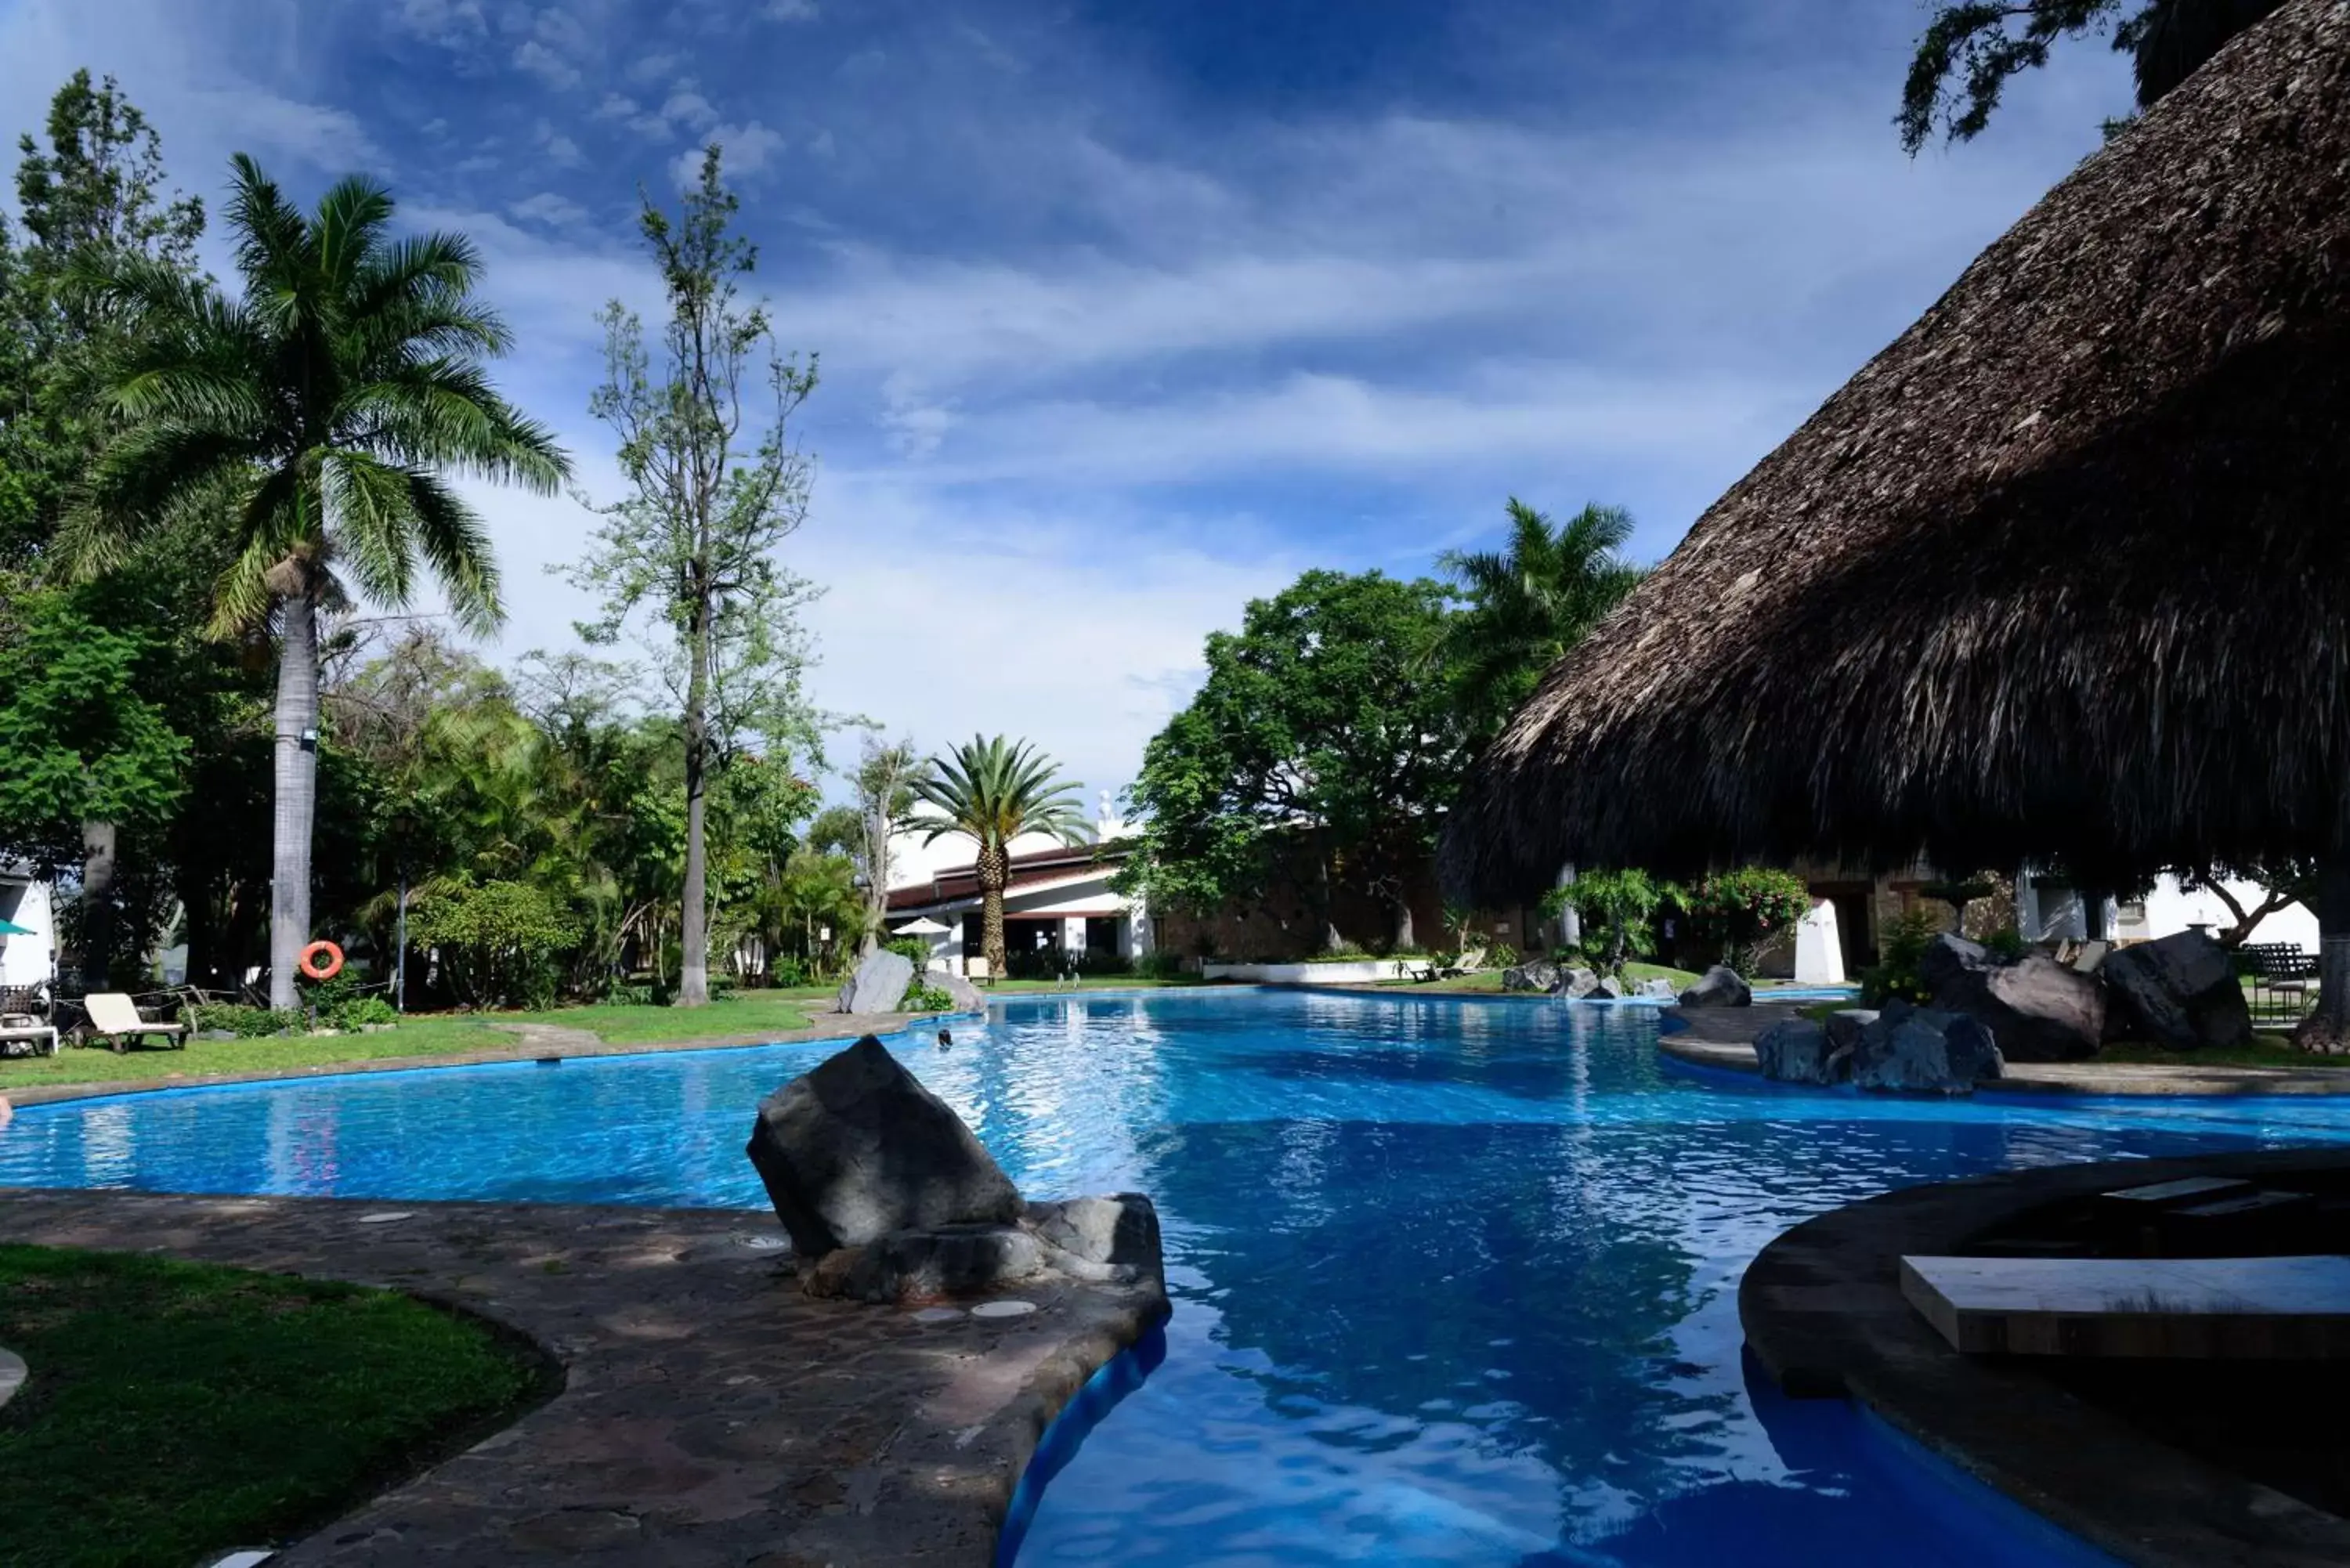 Activities, Swimming Pool in Radisson Hotel Tapatio Guadalajara